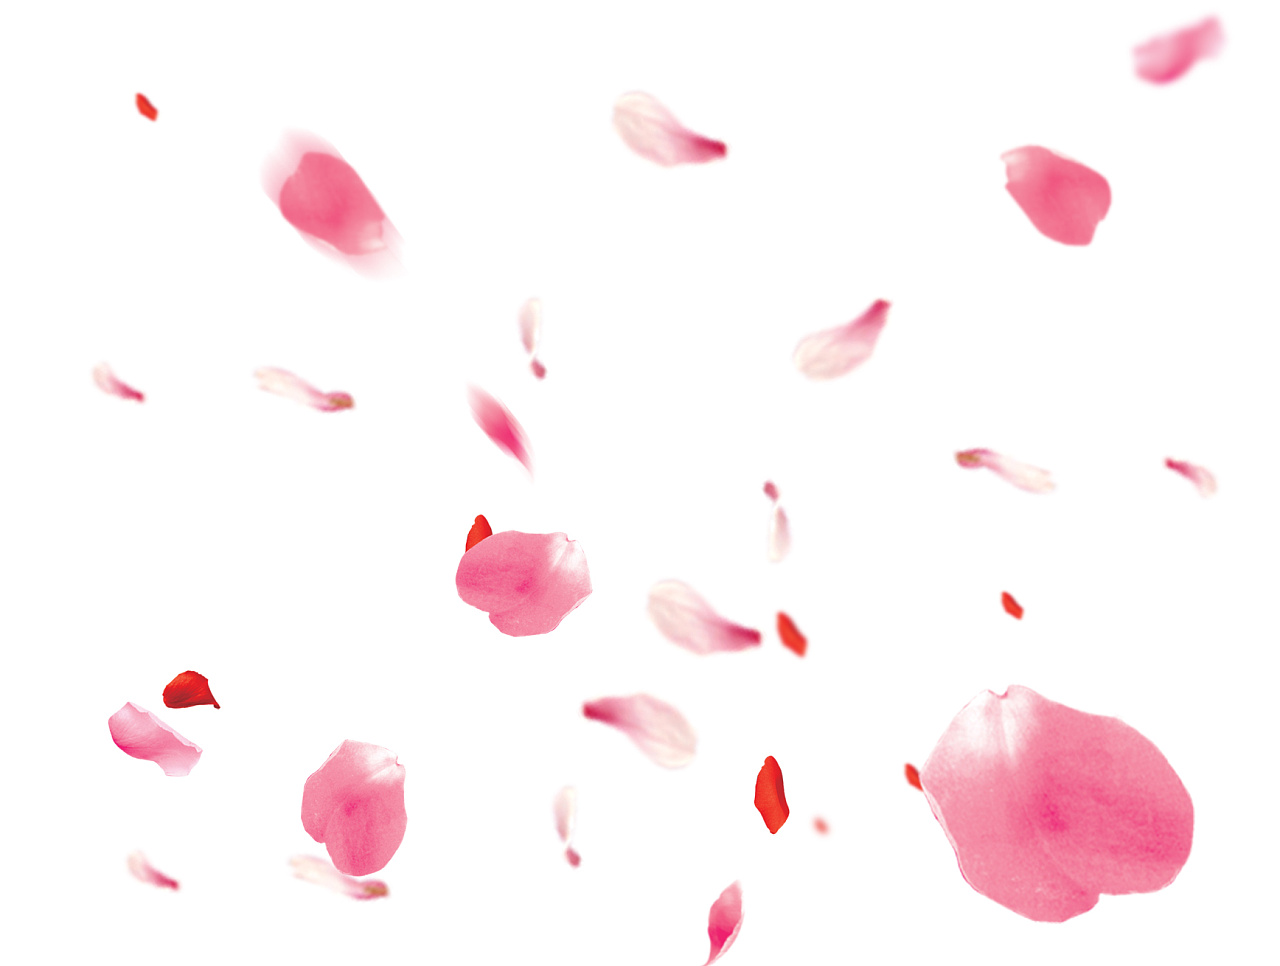 舞い散る小さな花びらイラスト, 花弁, 空一面の花びら, 透明な花びら背景画像素材無料ダウンロード - Pngtree